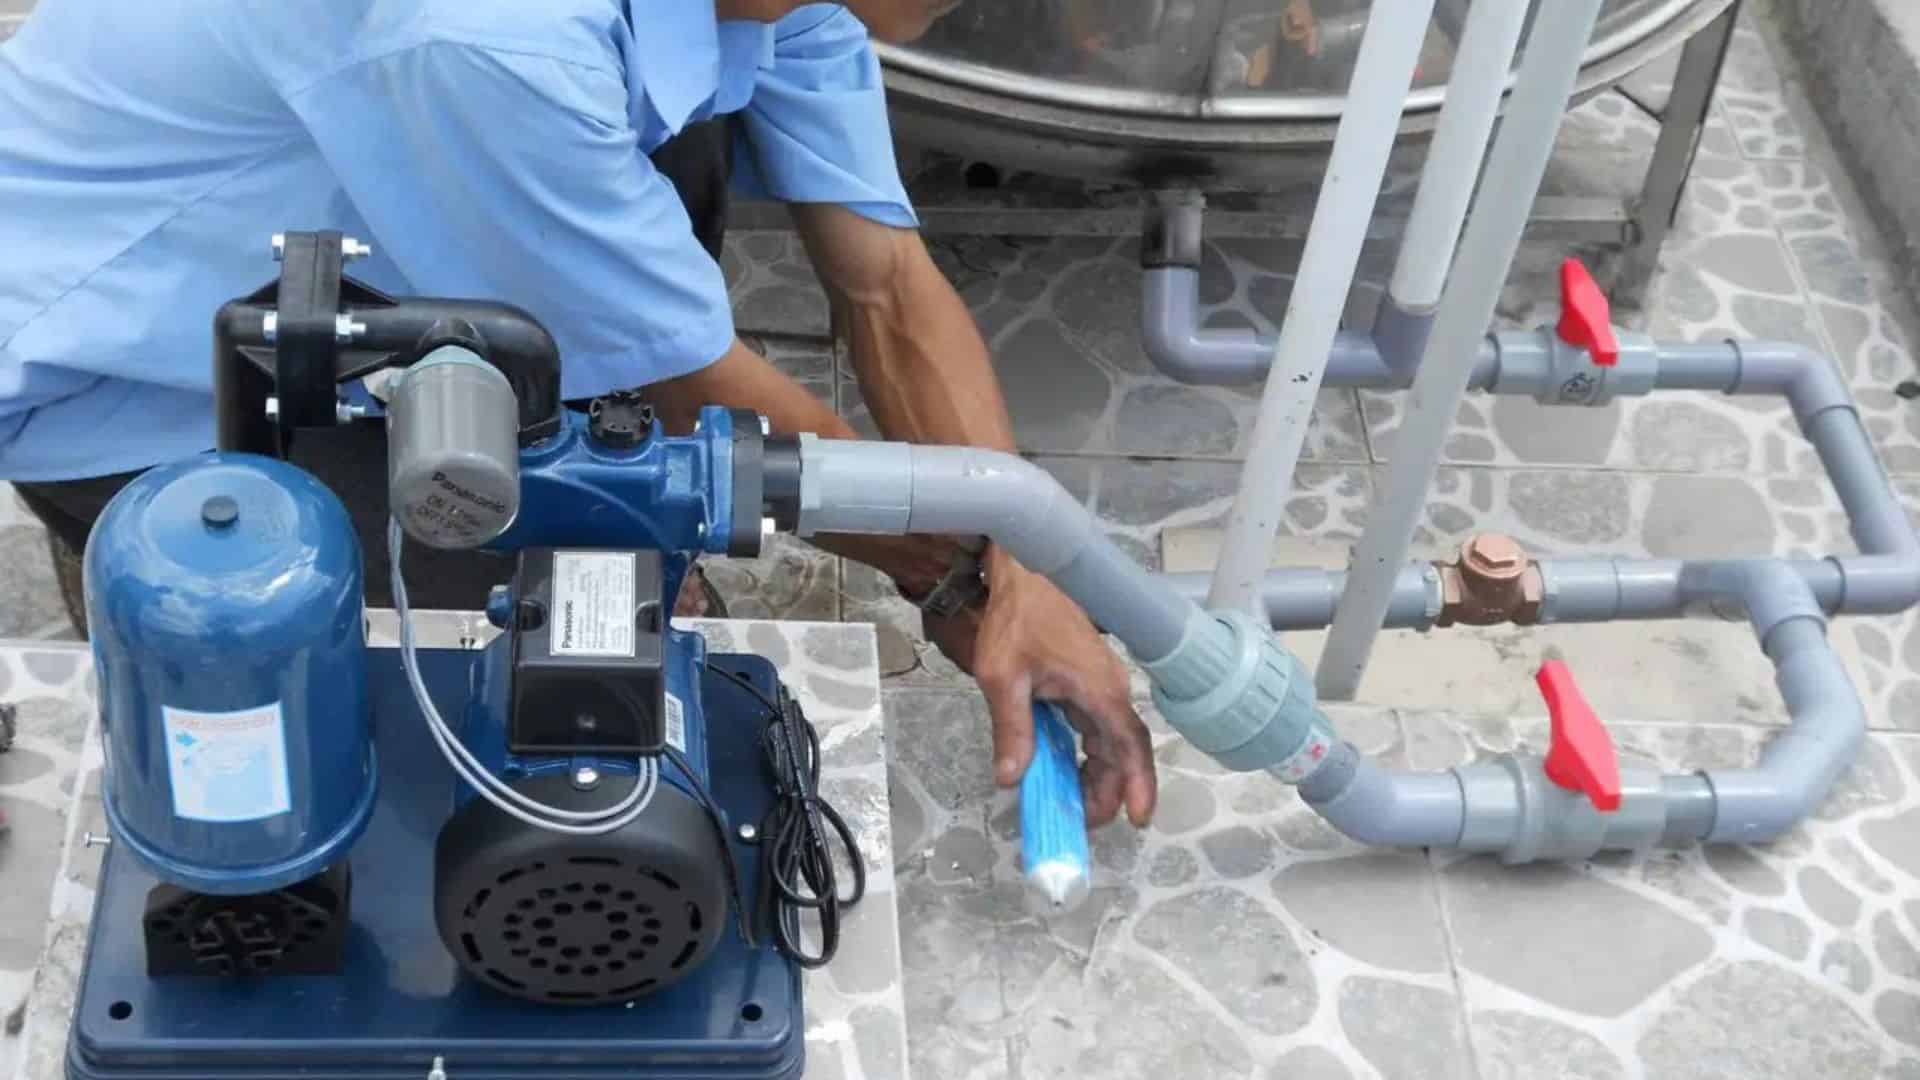 Tuấn Ngọc - Địa chỉ bán máy bơm nước Đà Nẵng